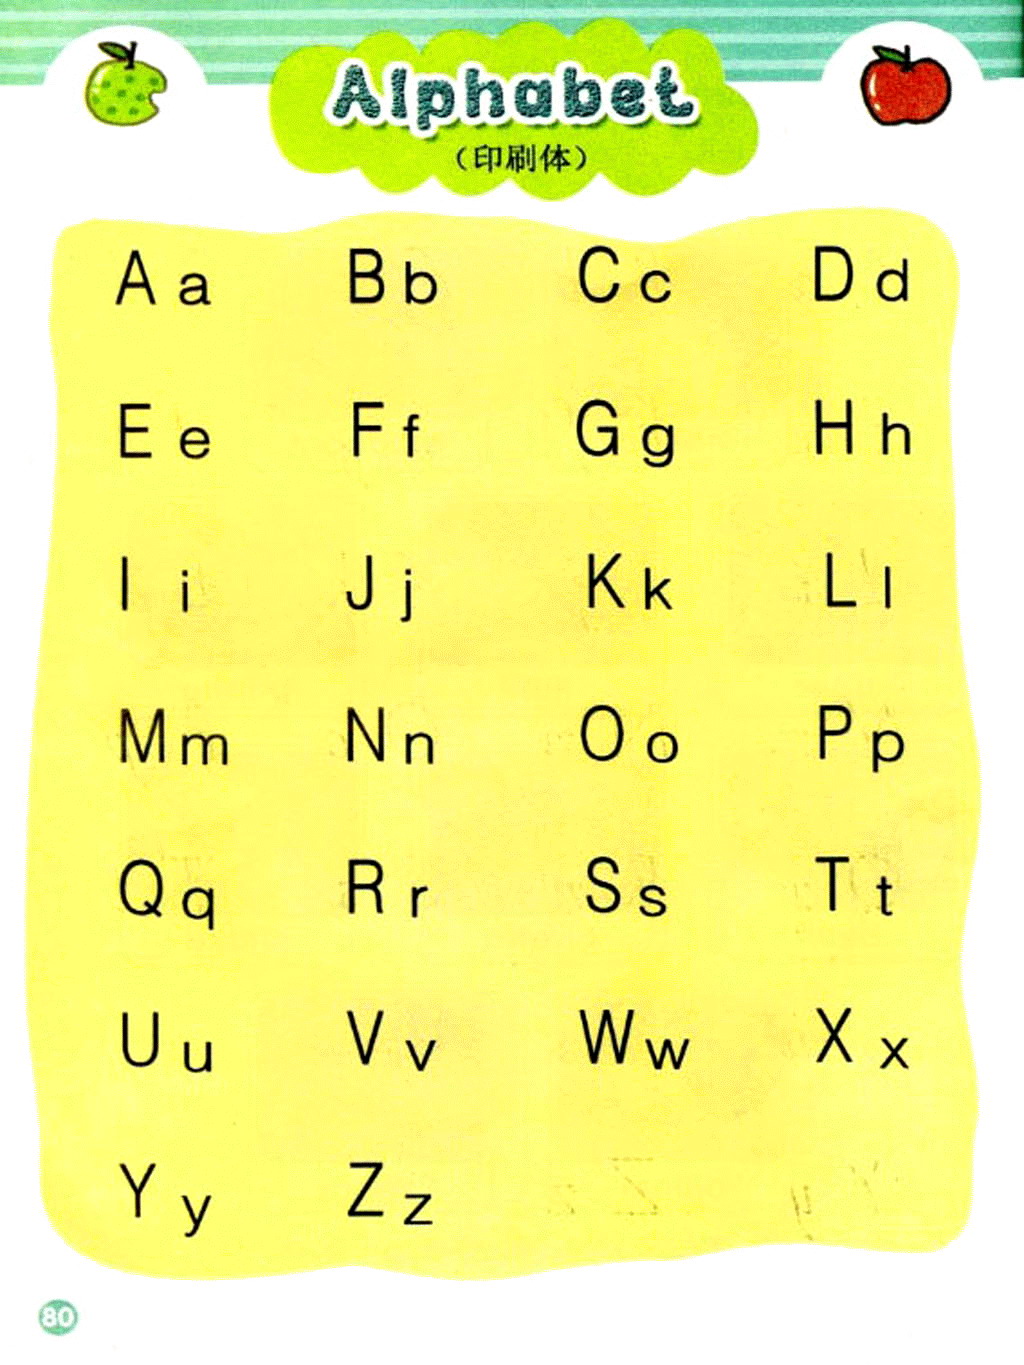 26个英文字母表|英语字母书写格式